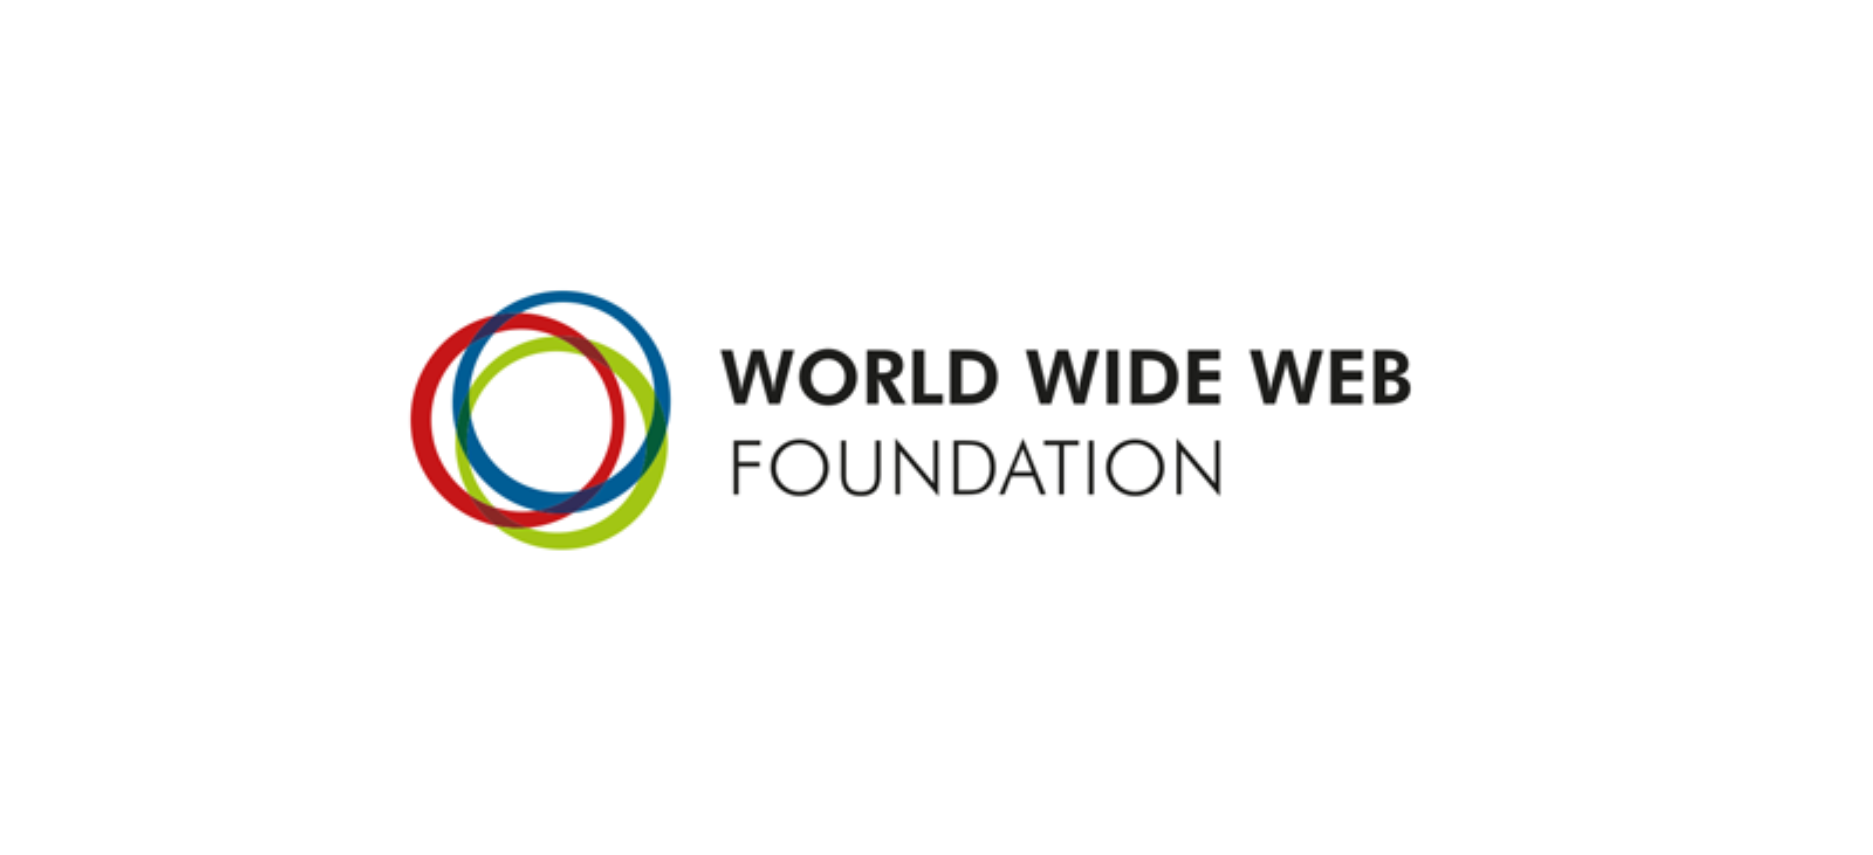 WWW Foundation